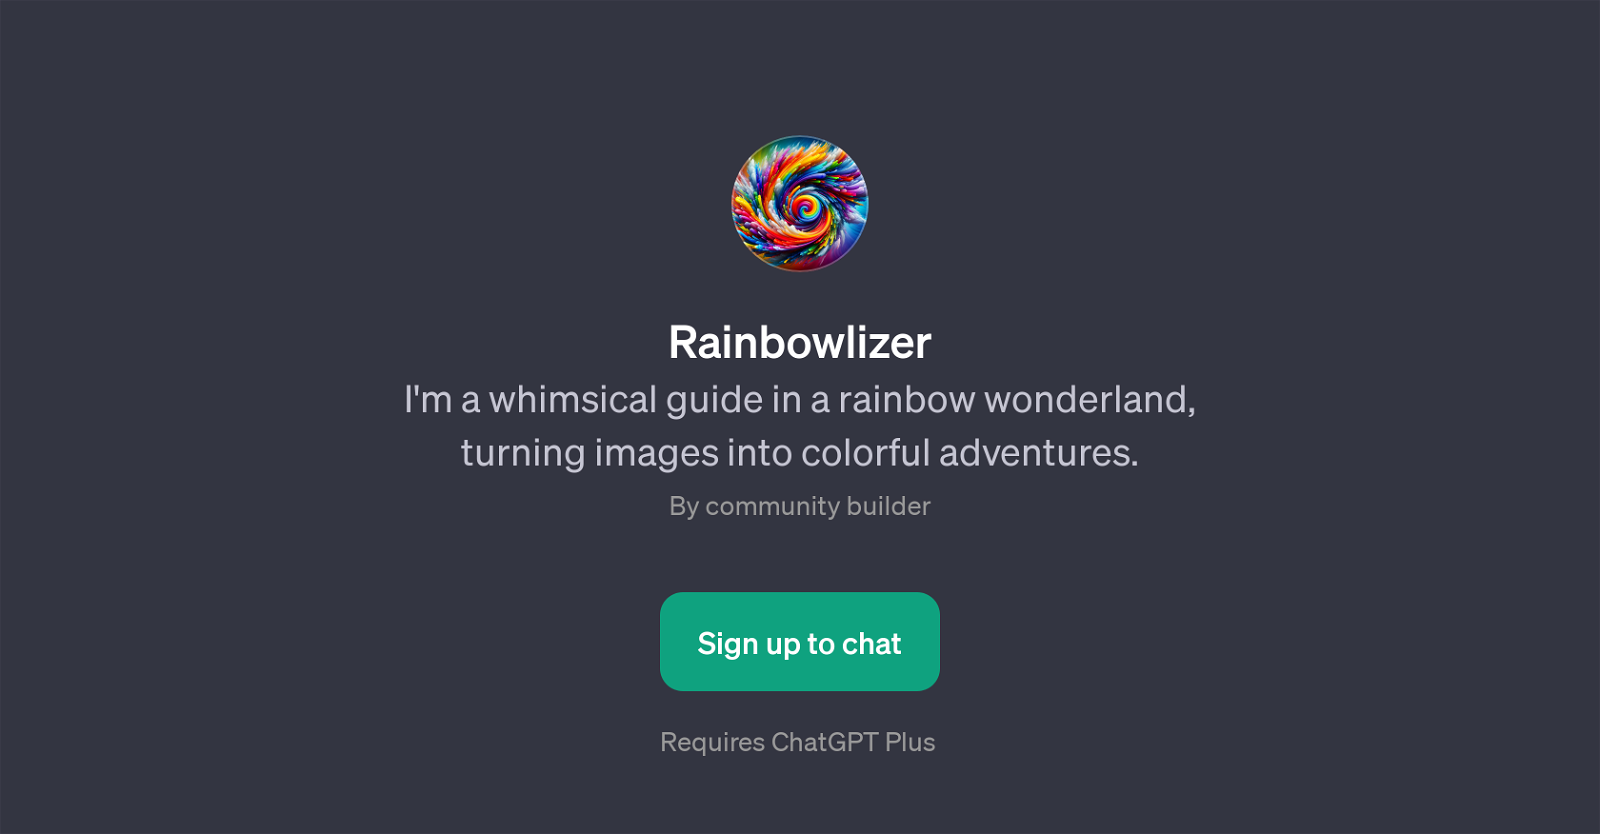 Rainbowlizer website